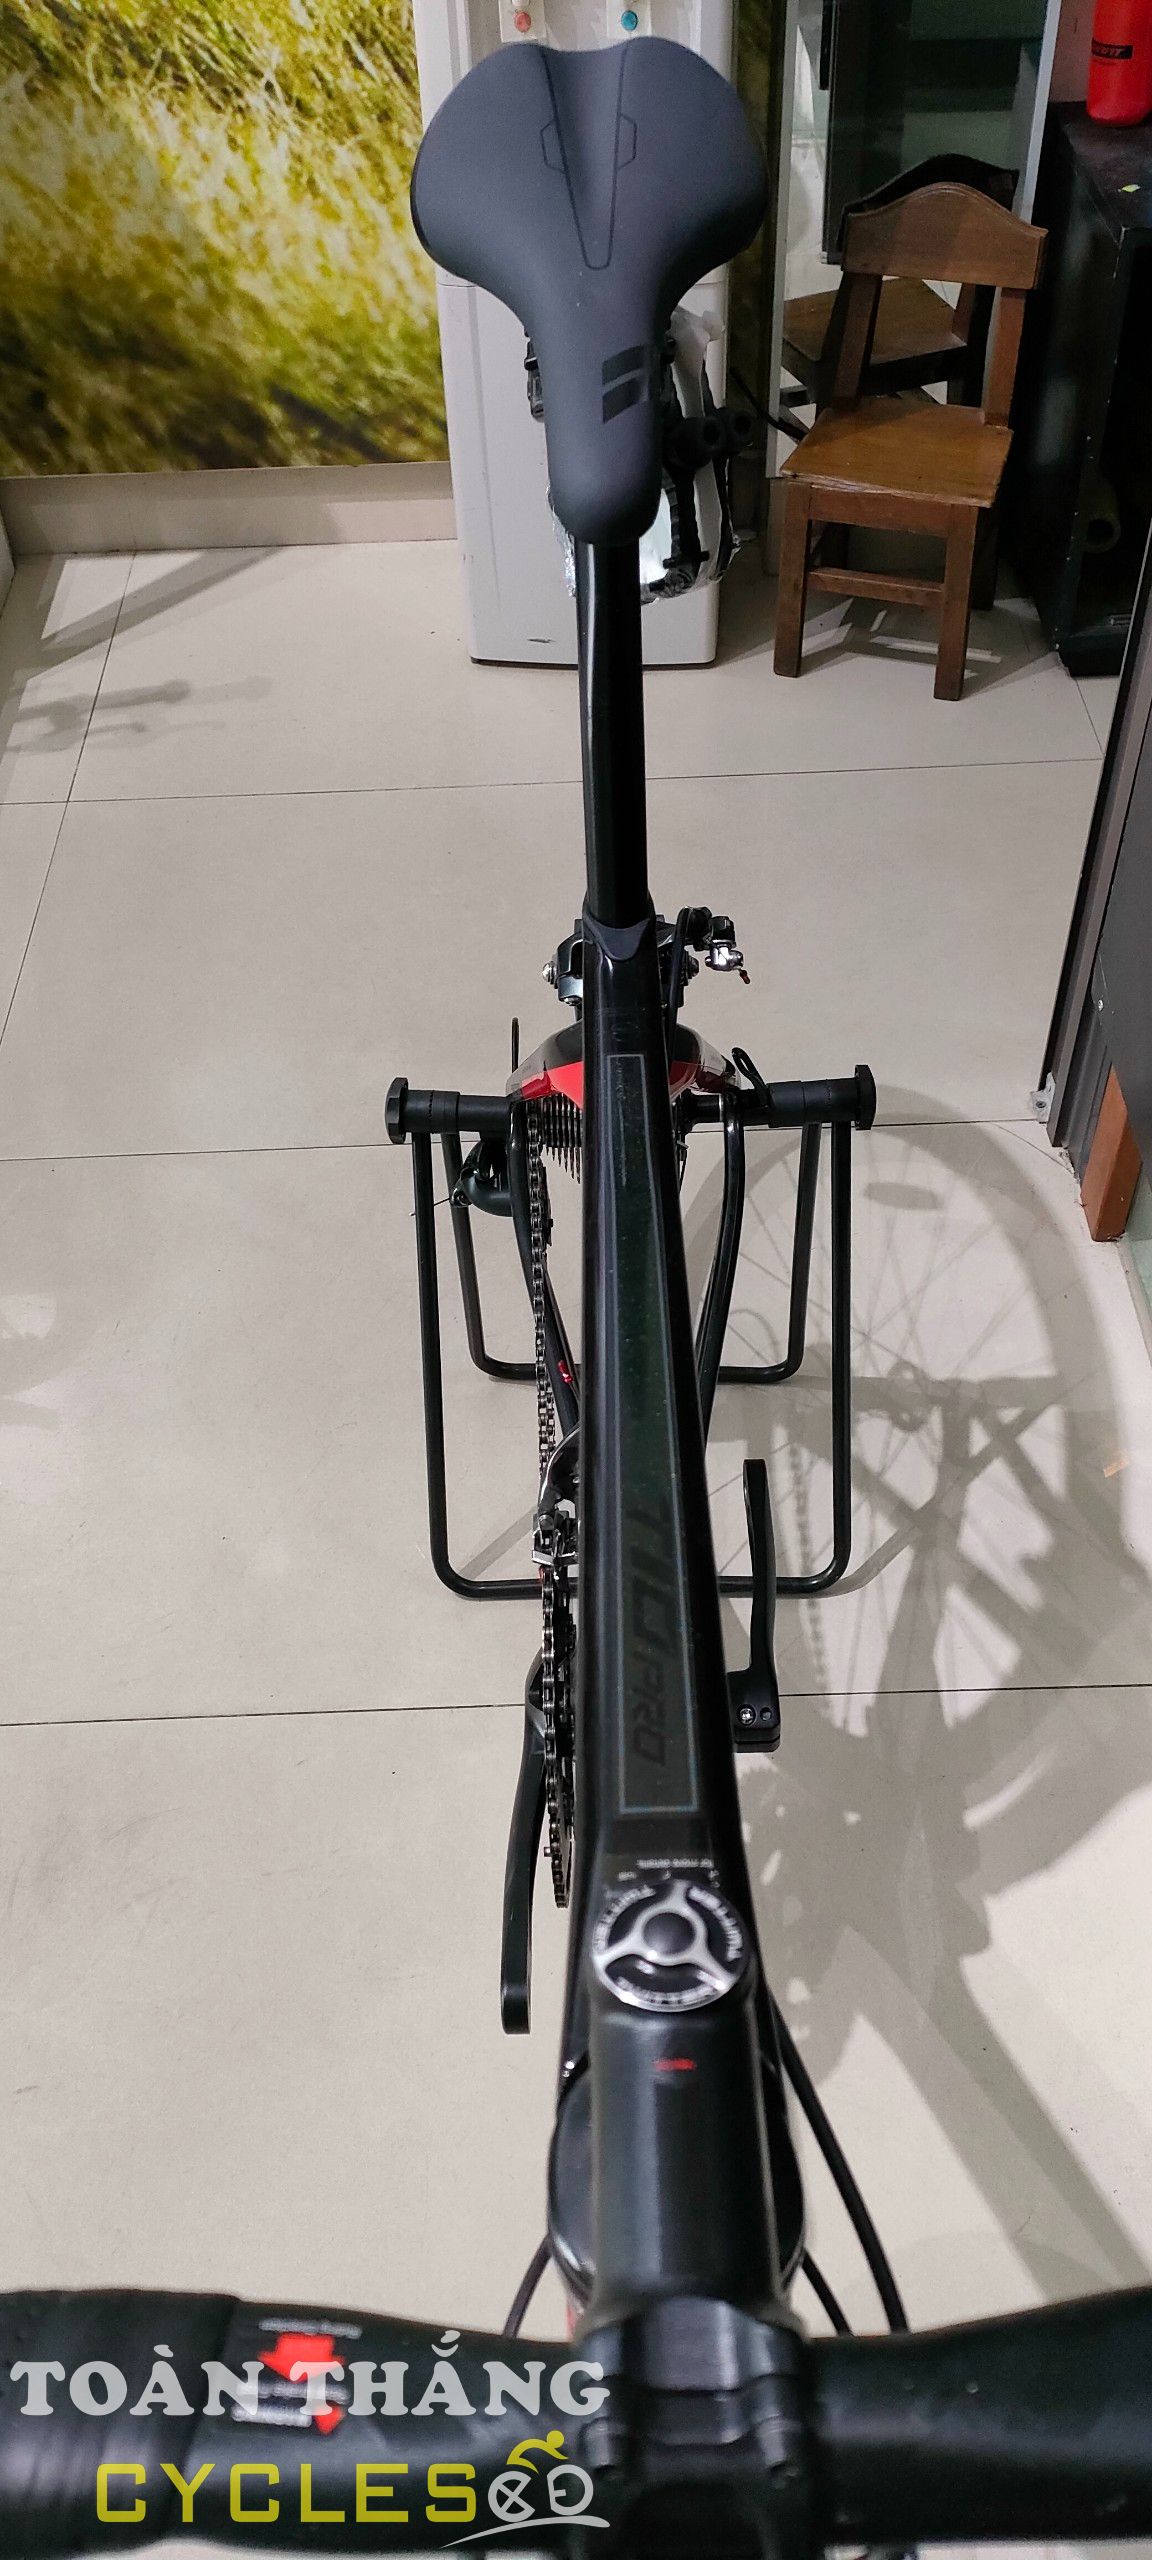 Xe đạp đua Twitter T10 Tiagra R4700 2021 Black Red